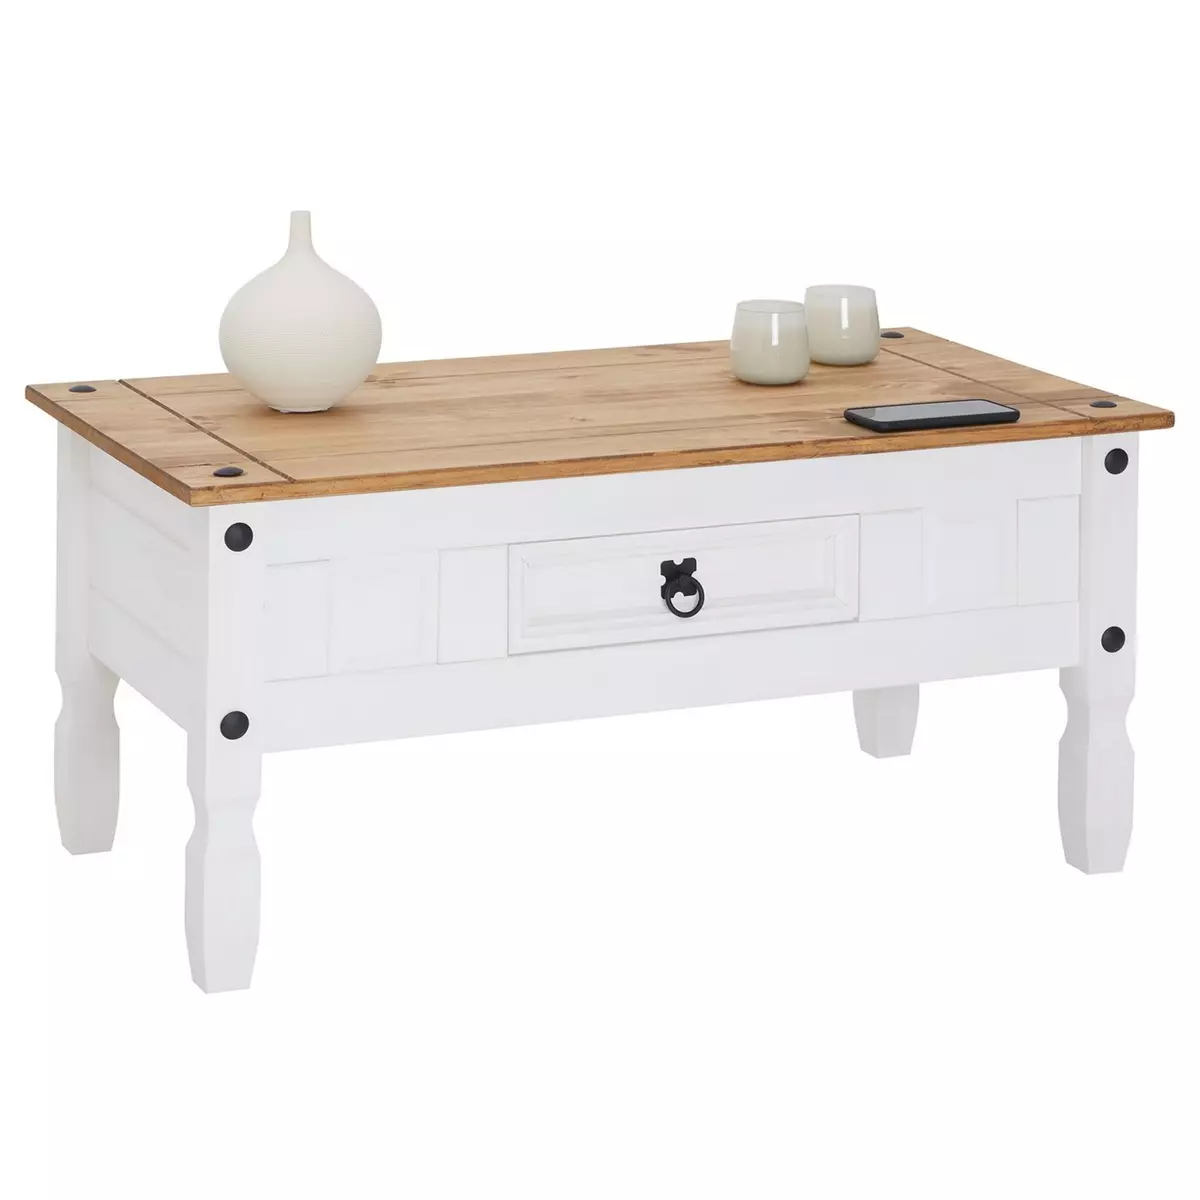 IDIMEX Table basse CAMPO table d'appoint rectangulaire en pin massif blanc et brun avec 1 tiroir, meuble de salon style mexicain en bois